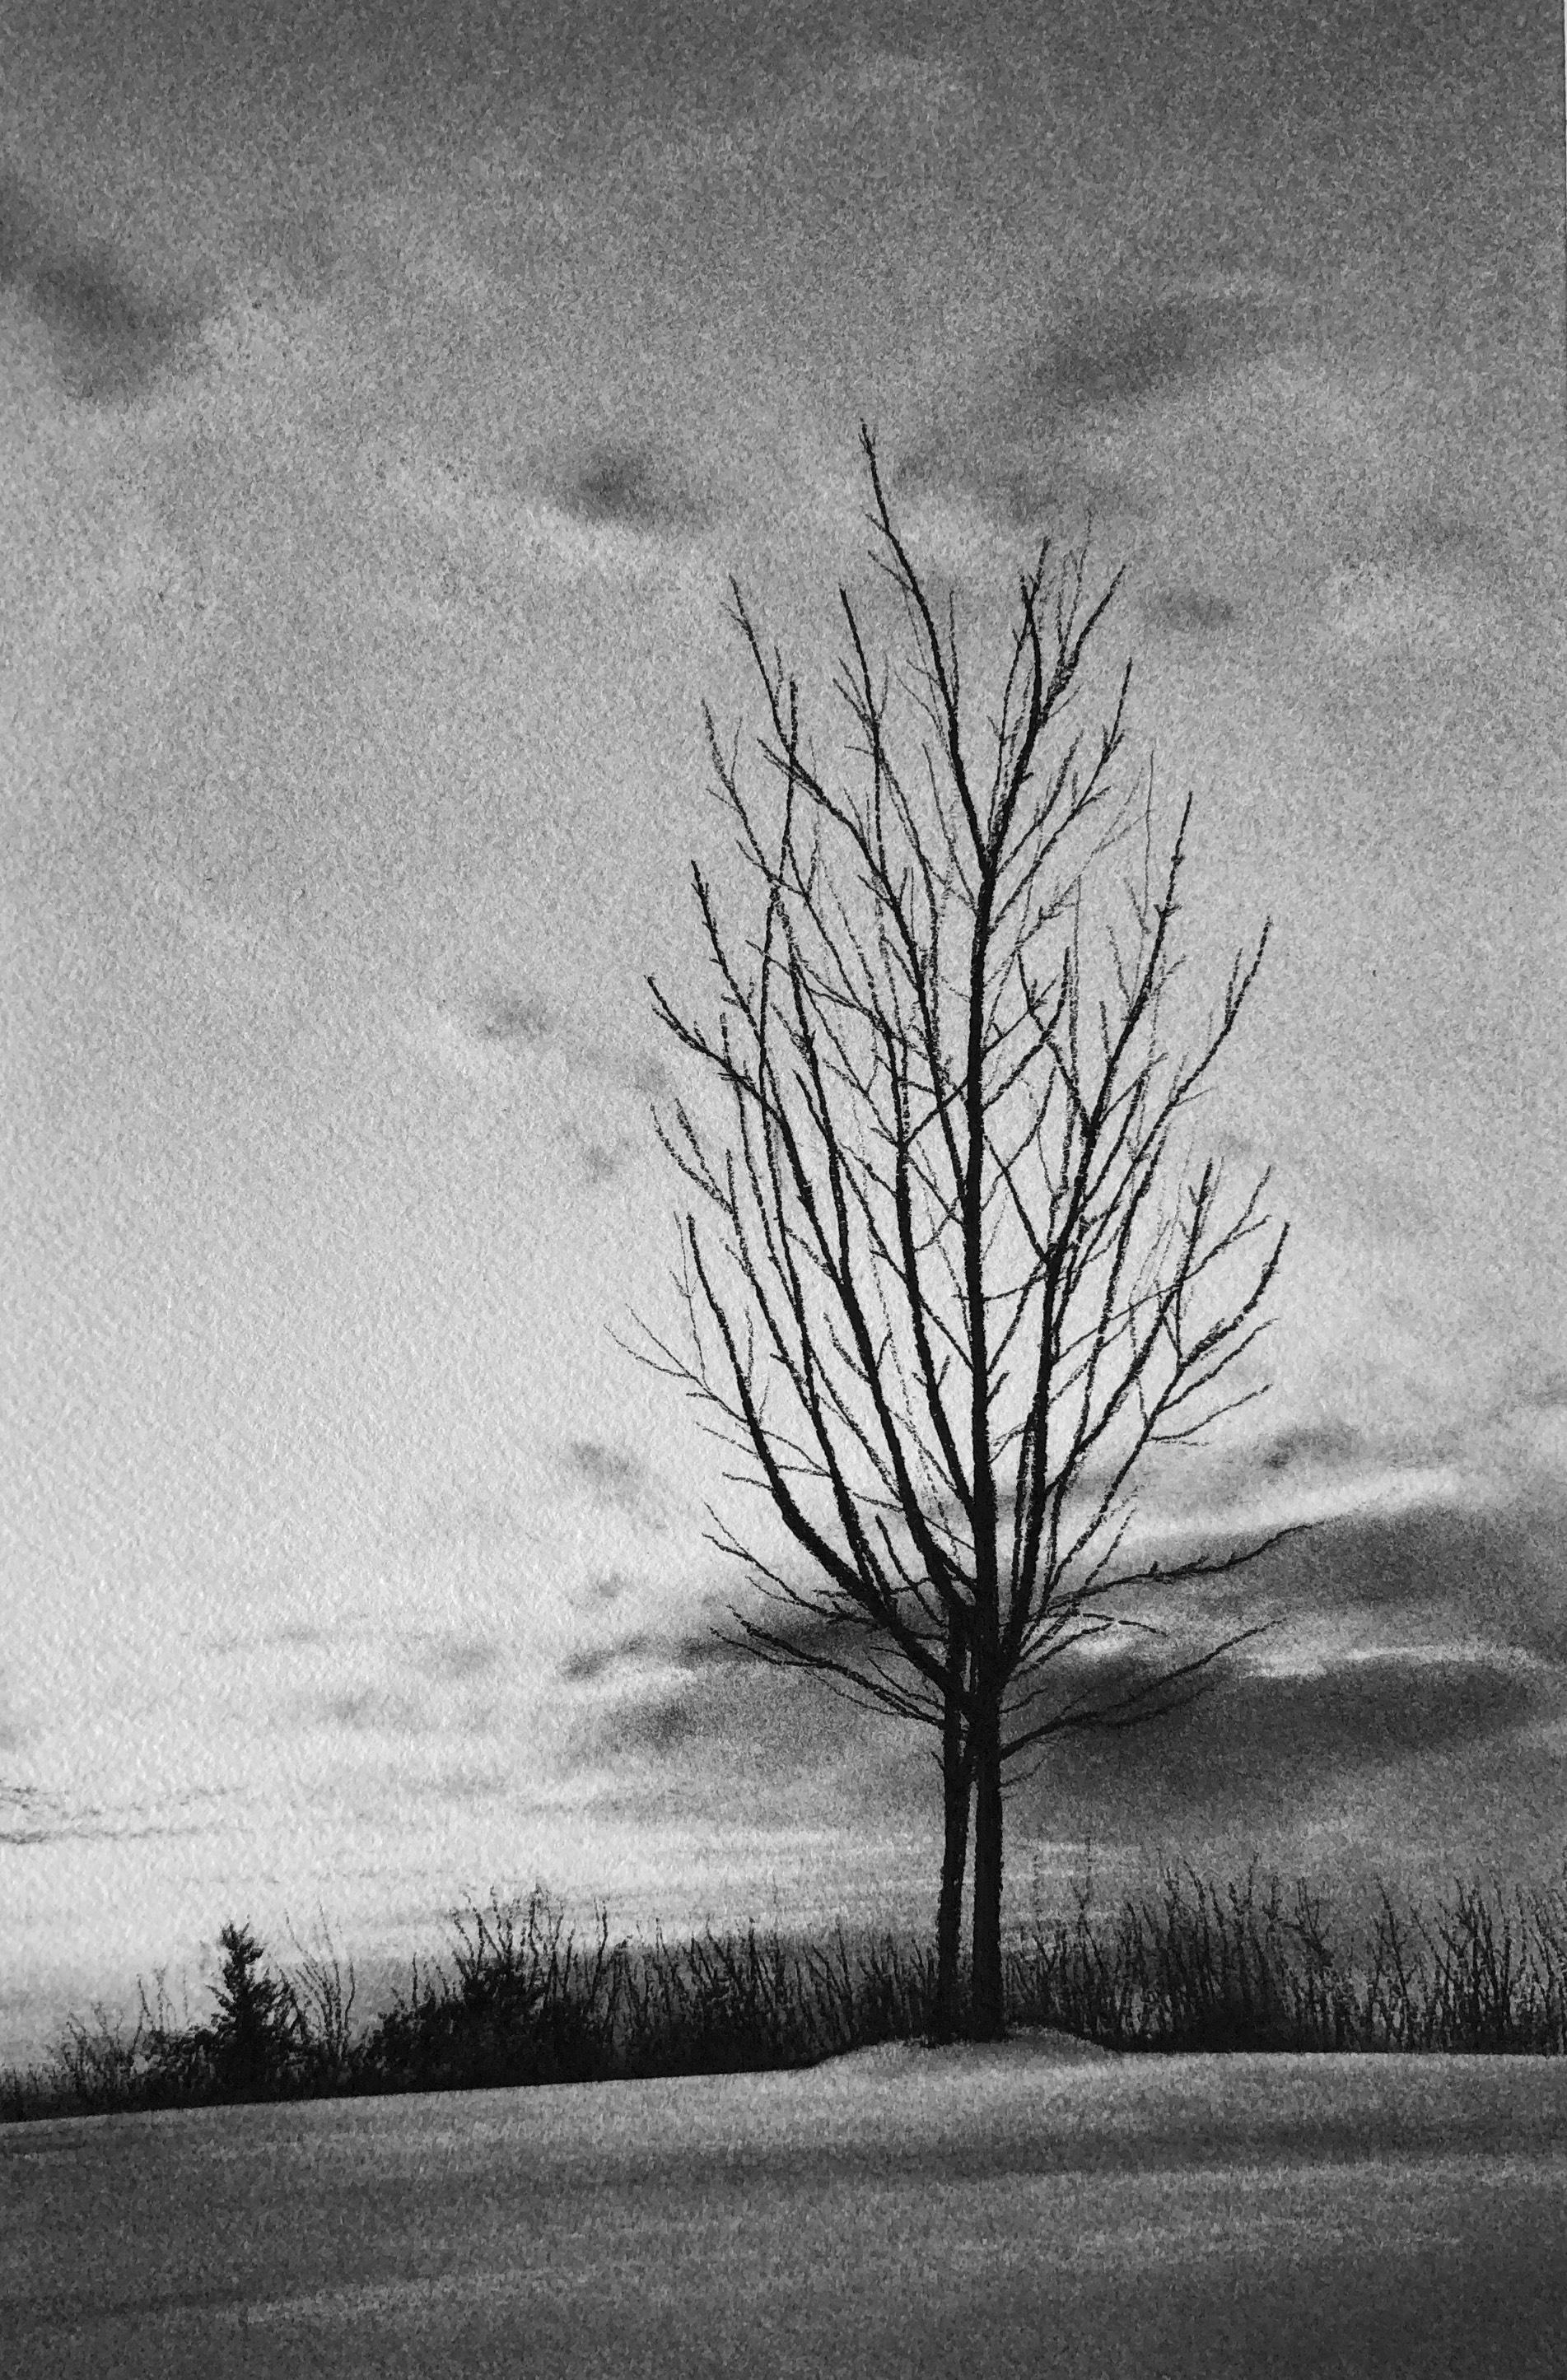 Winterszene auf dem Chesswood Trail, schwarz-weiße Kohlezeichnung eines nackten Baumes